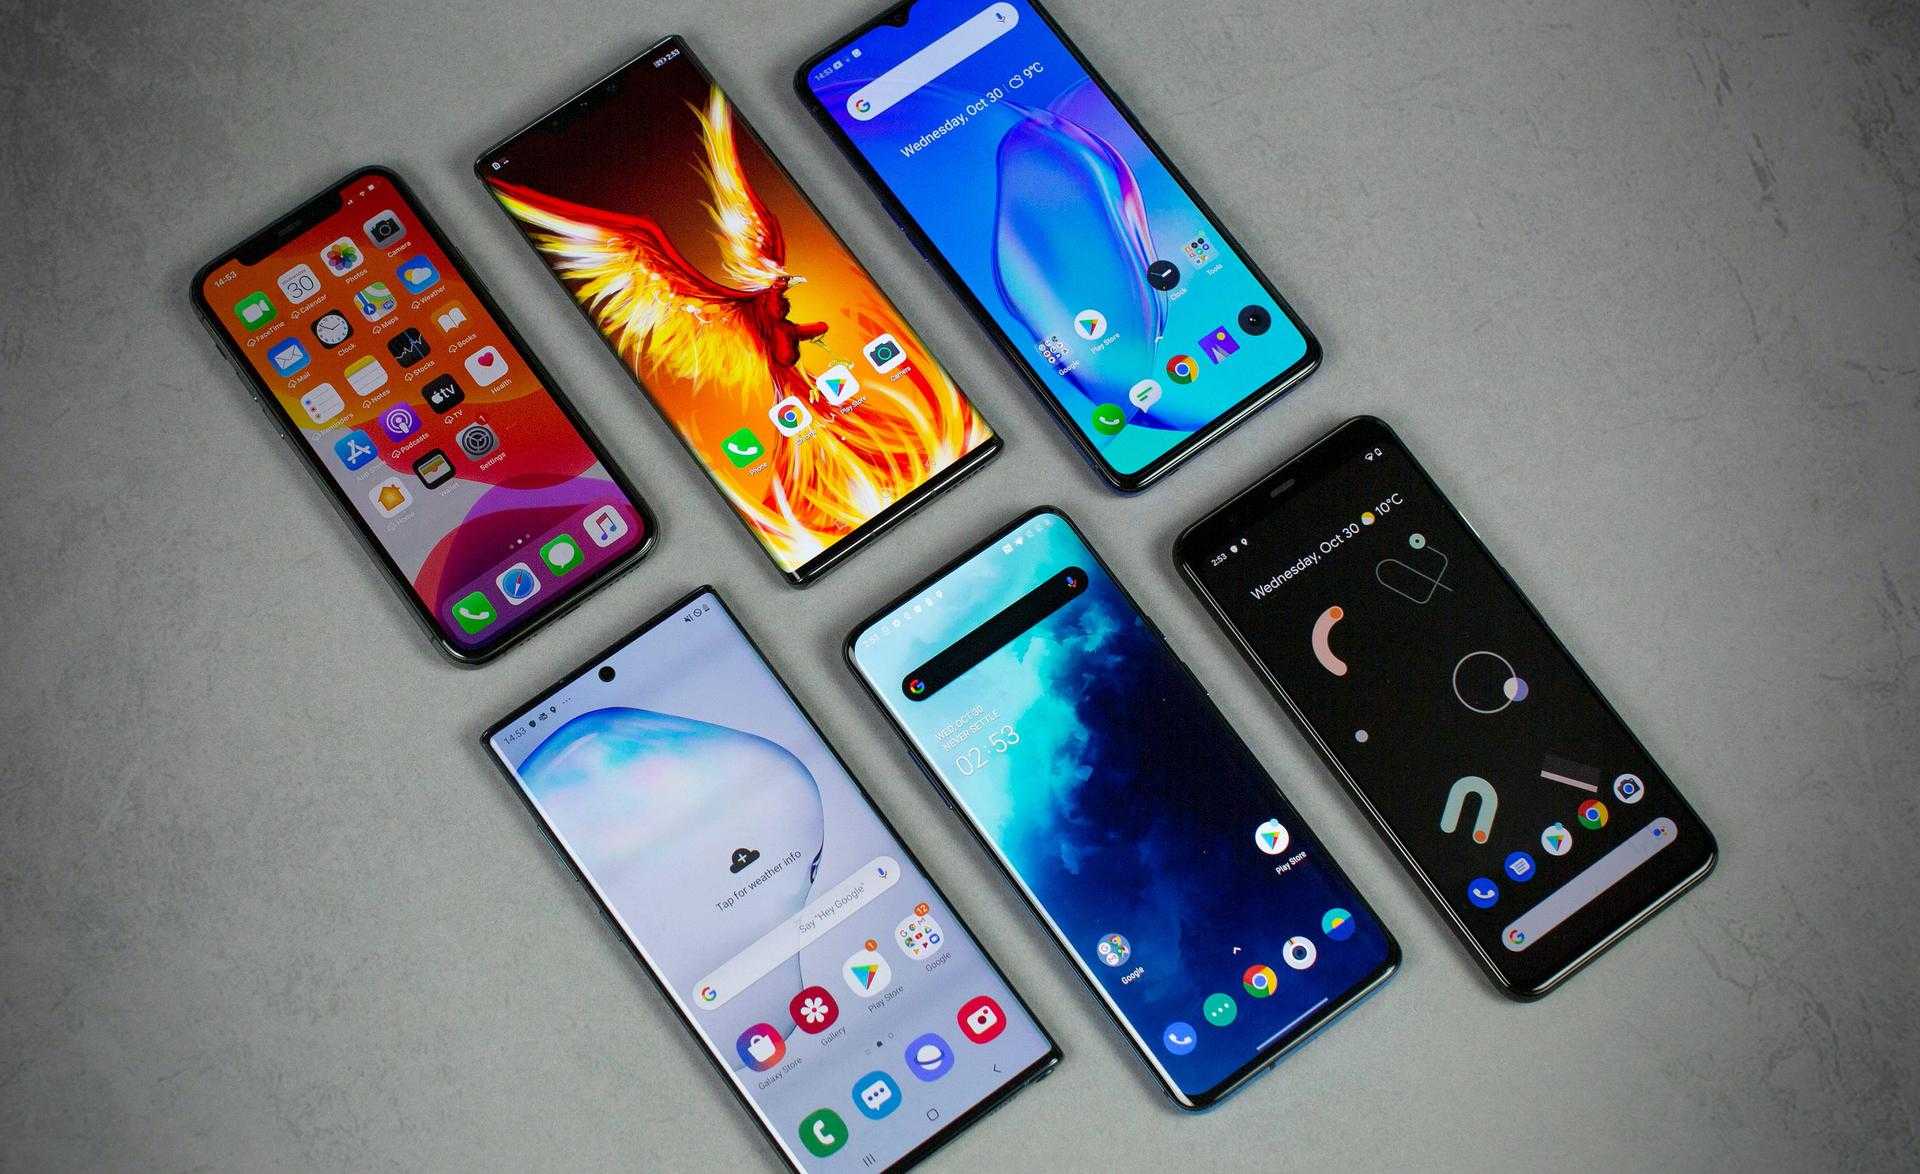 В рейтинге представлено 12 лучших смартфонов до 10000 рублей для покупки в 2022-2023 году, которые обладают хорошей камерой, памятью, сбалансированными техническими характеристиками, ценой и качеством